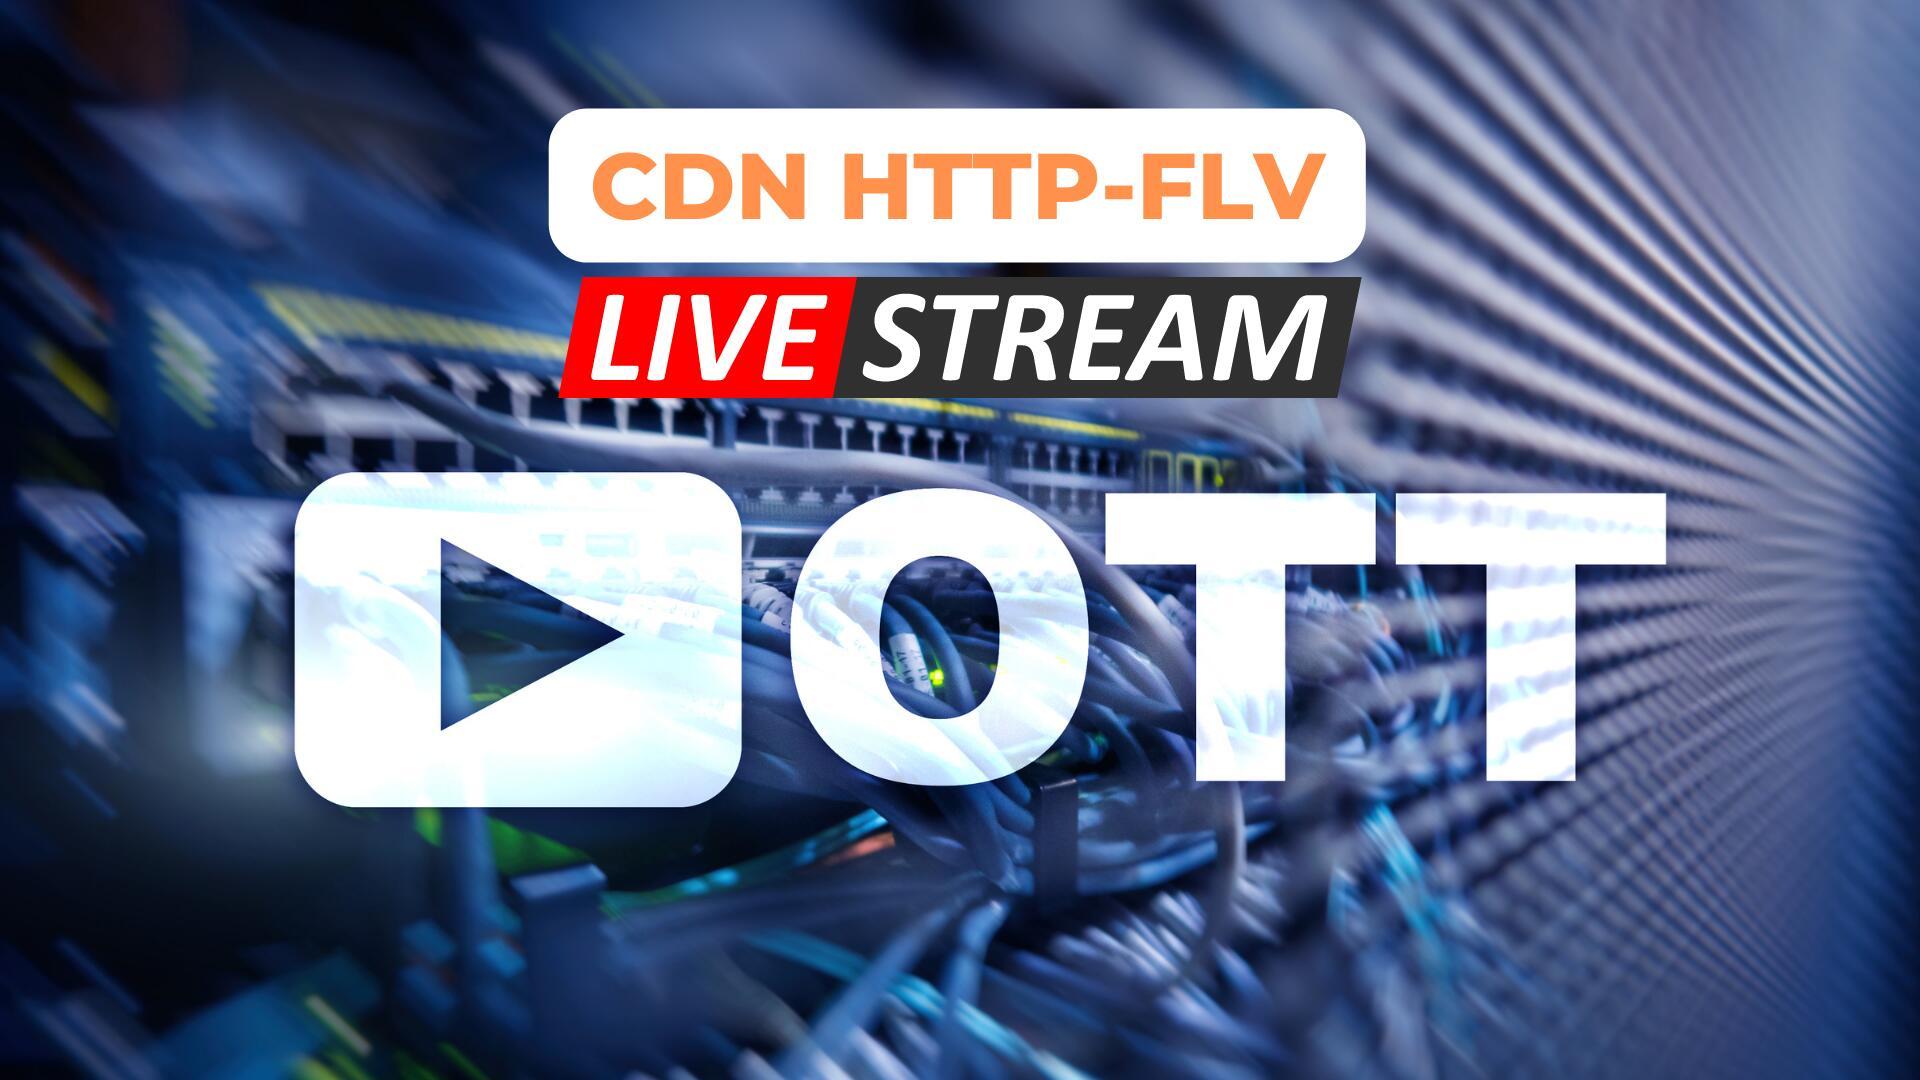 VNETWORK hỗ trợ Live Streaming độ trễ thấp với HTTP-FLV dưới 3s